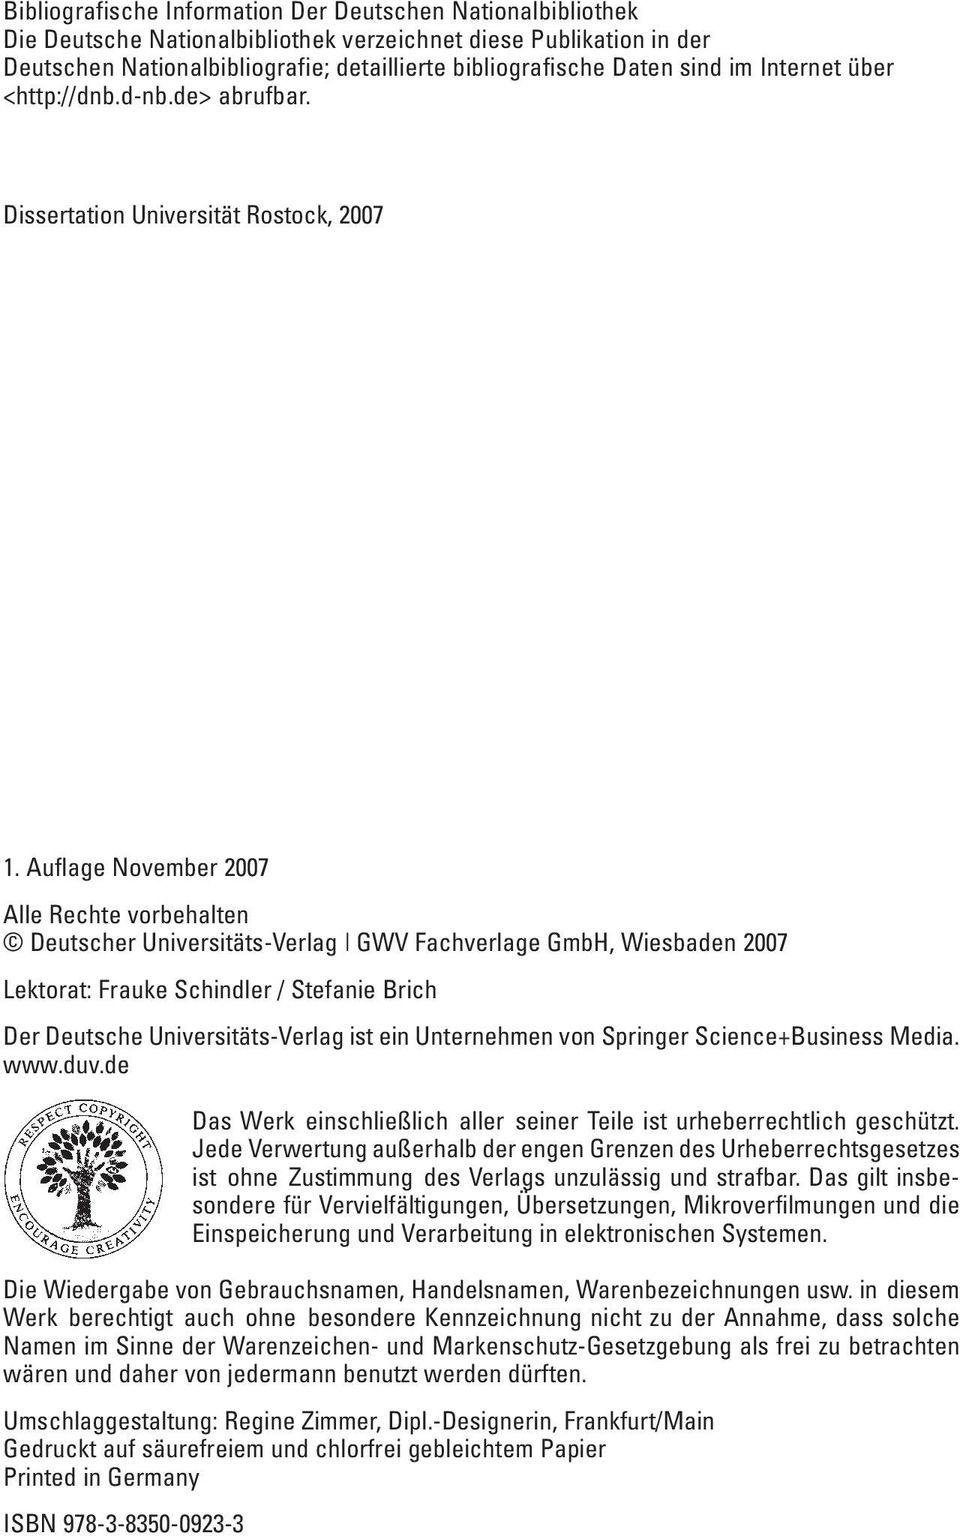 Auflage November 2007 Alle Rechte vorbehalten Deutscher Universitäts-Verlag GWV Fachverlage GmbH, Wiesbaden 2007 Lektorat: Frauke Schindler / Stefanie Brich Der Deutsche Universitäts-Verlag ist ein